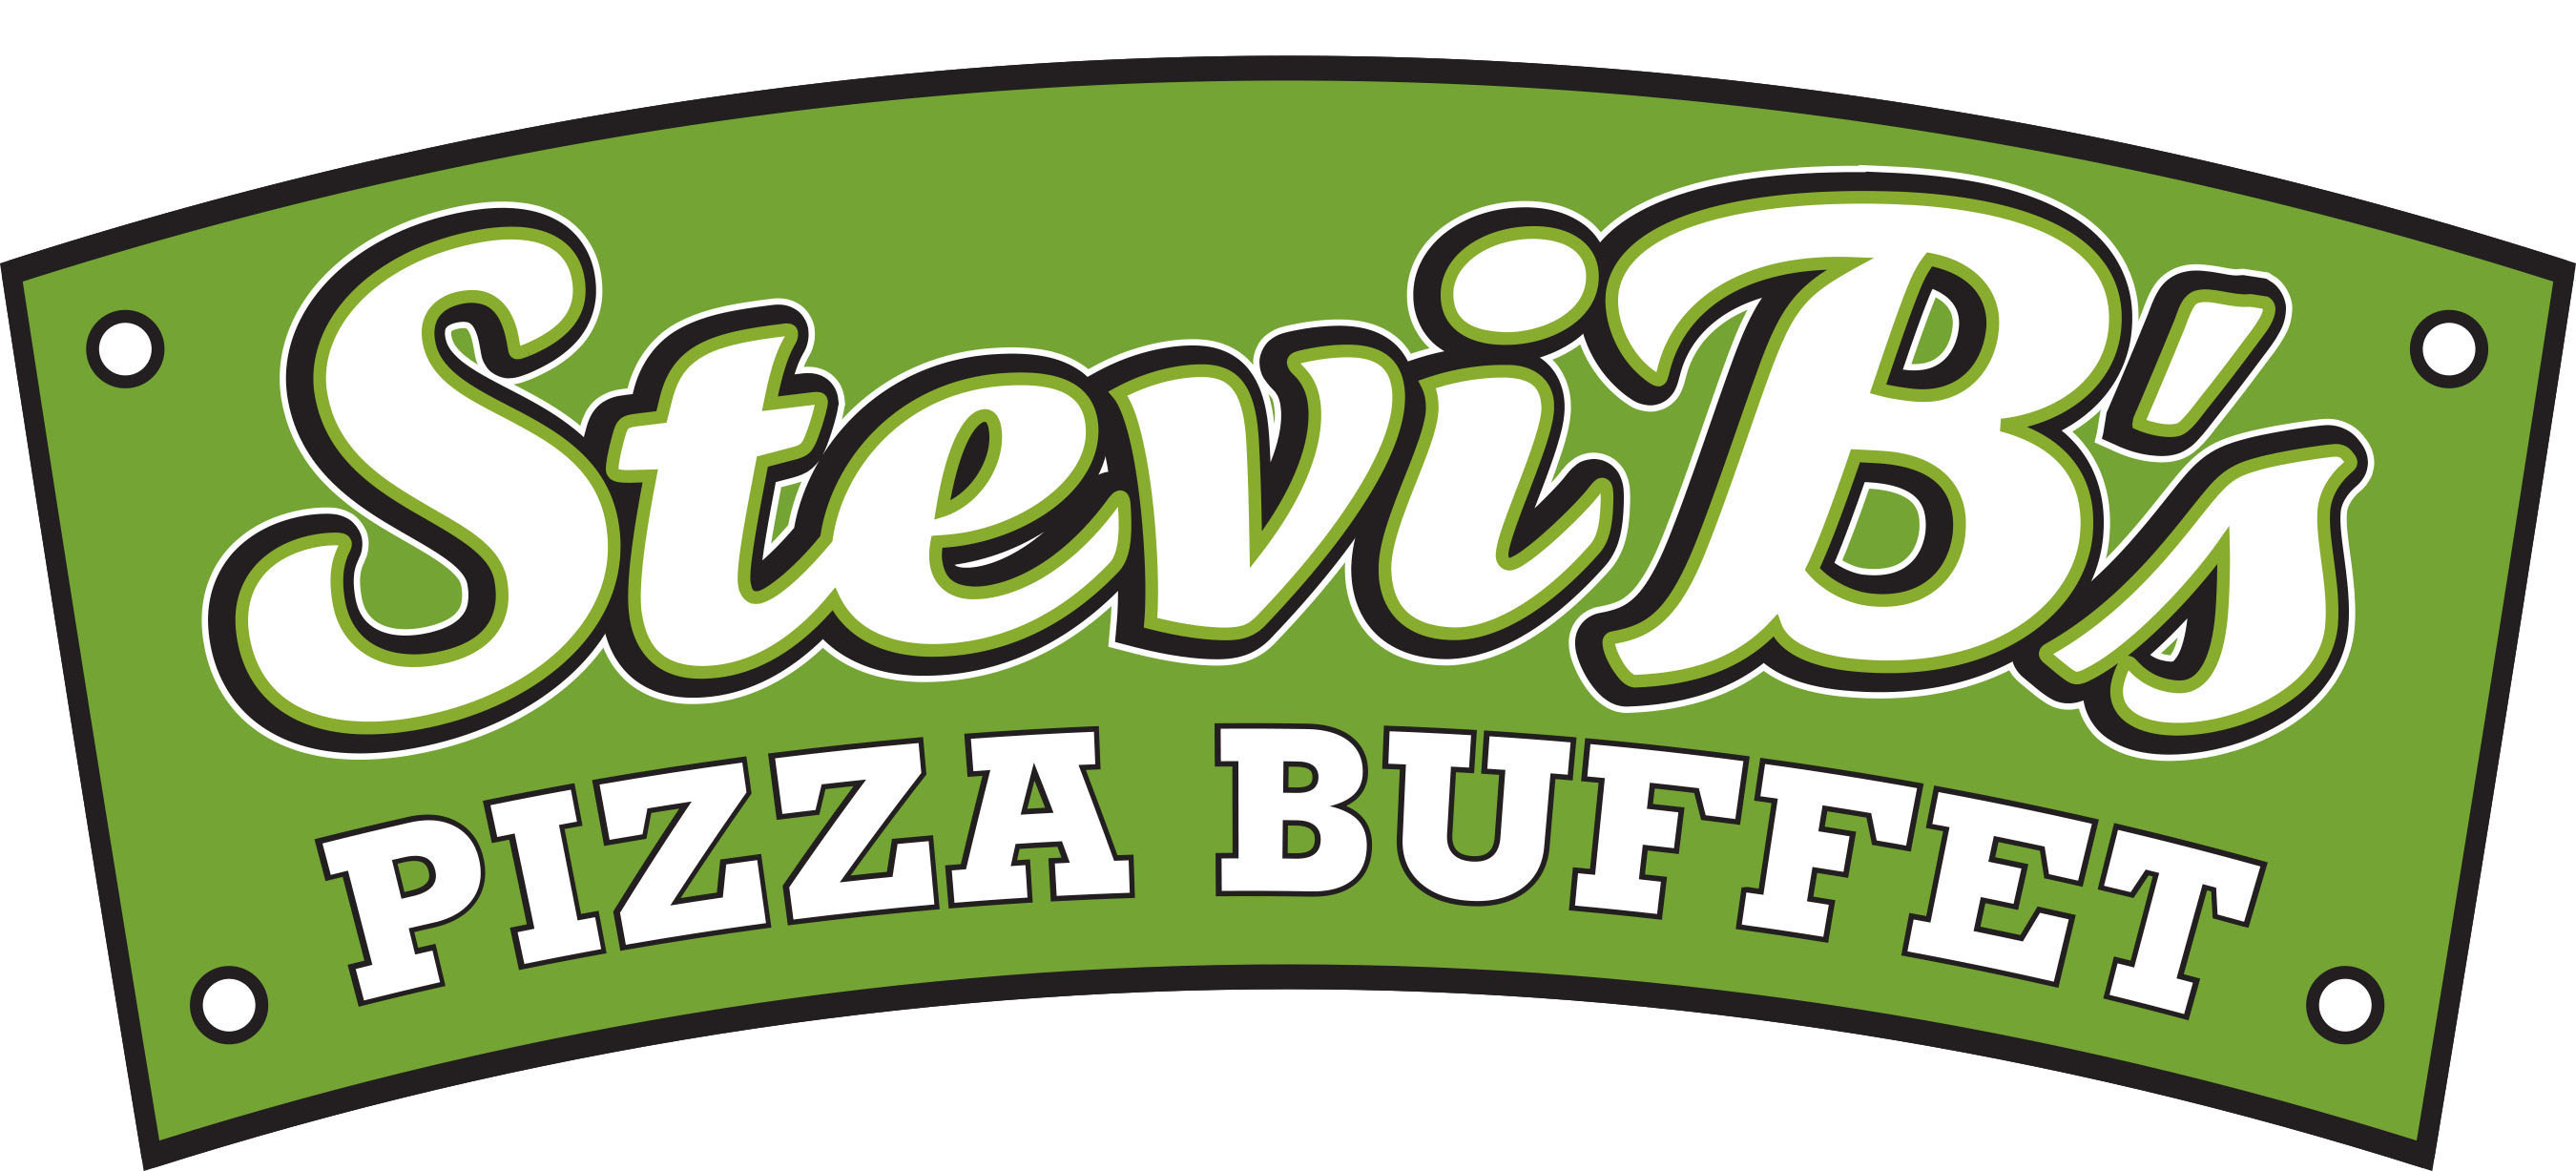 Stevie B's Pizza Buffet